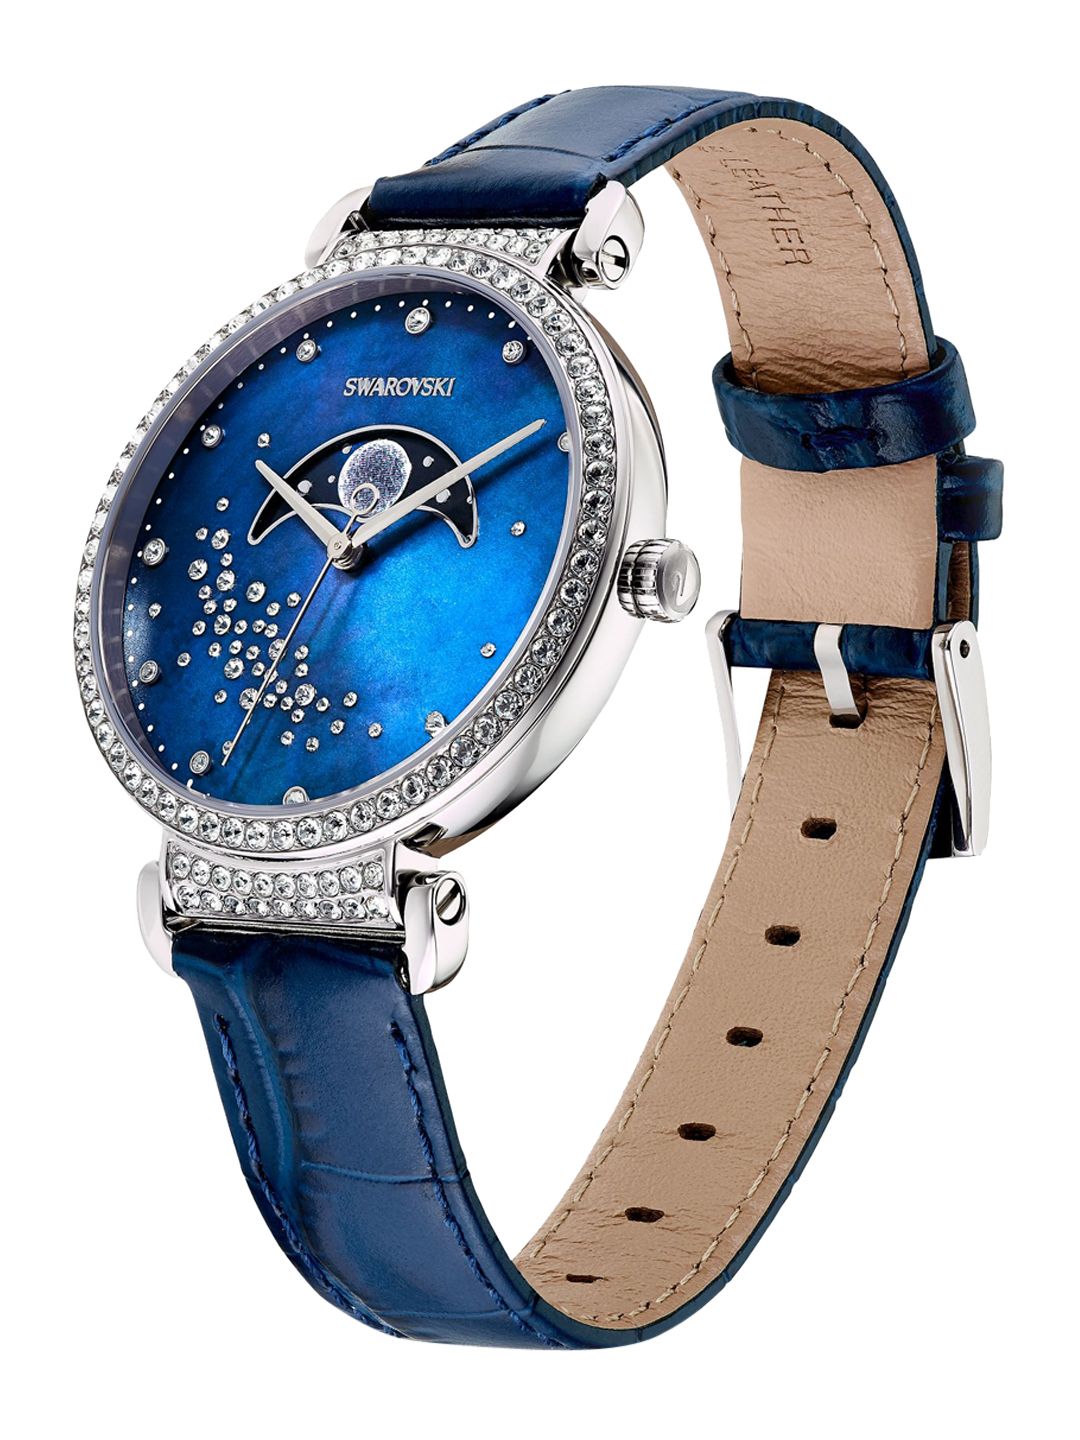 SWAROVSKI Women Blue Passage Moon Phase watch Price in India